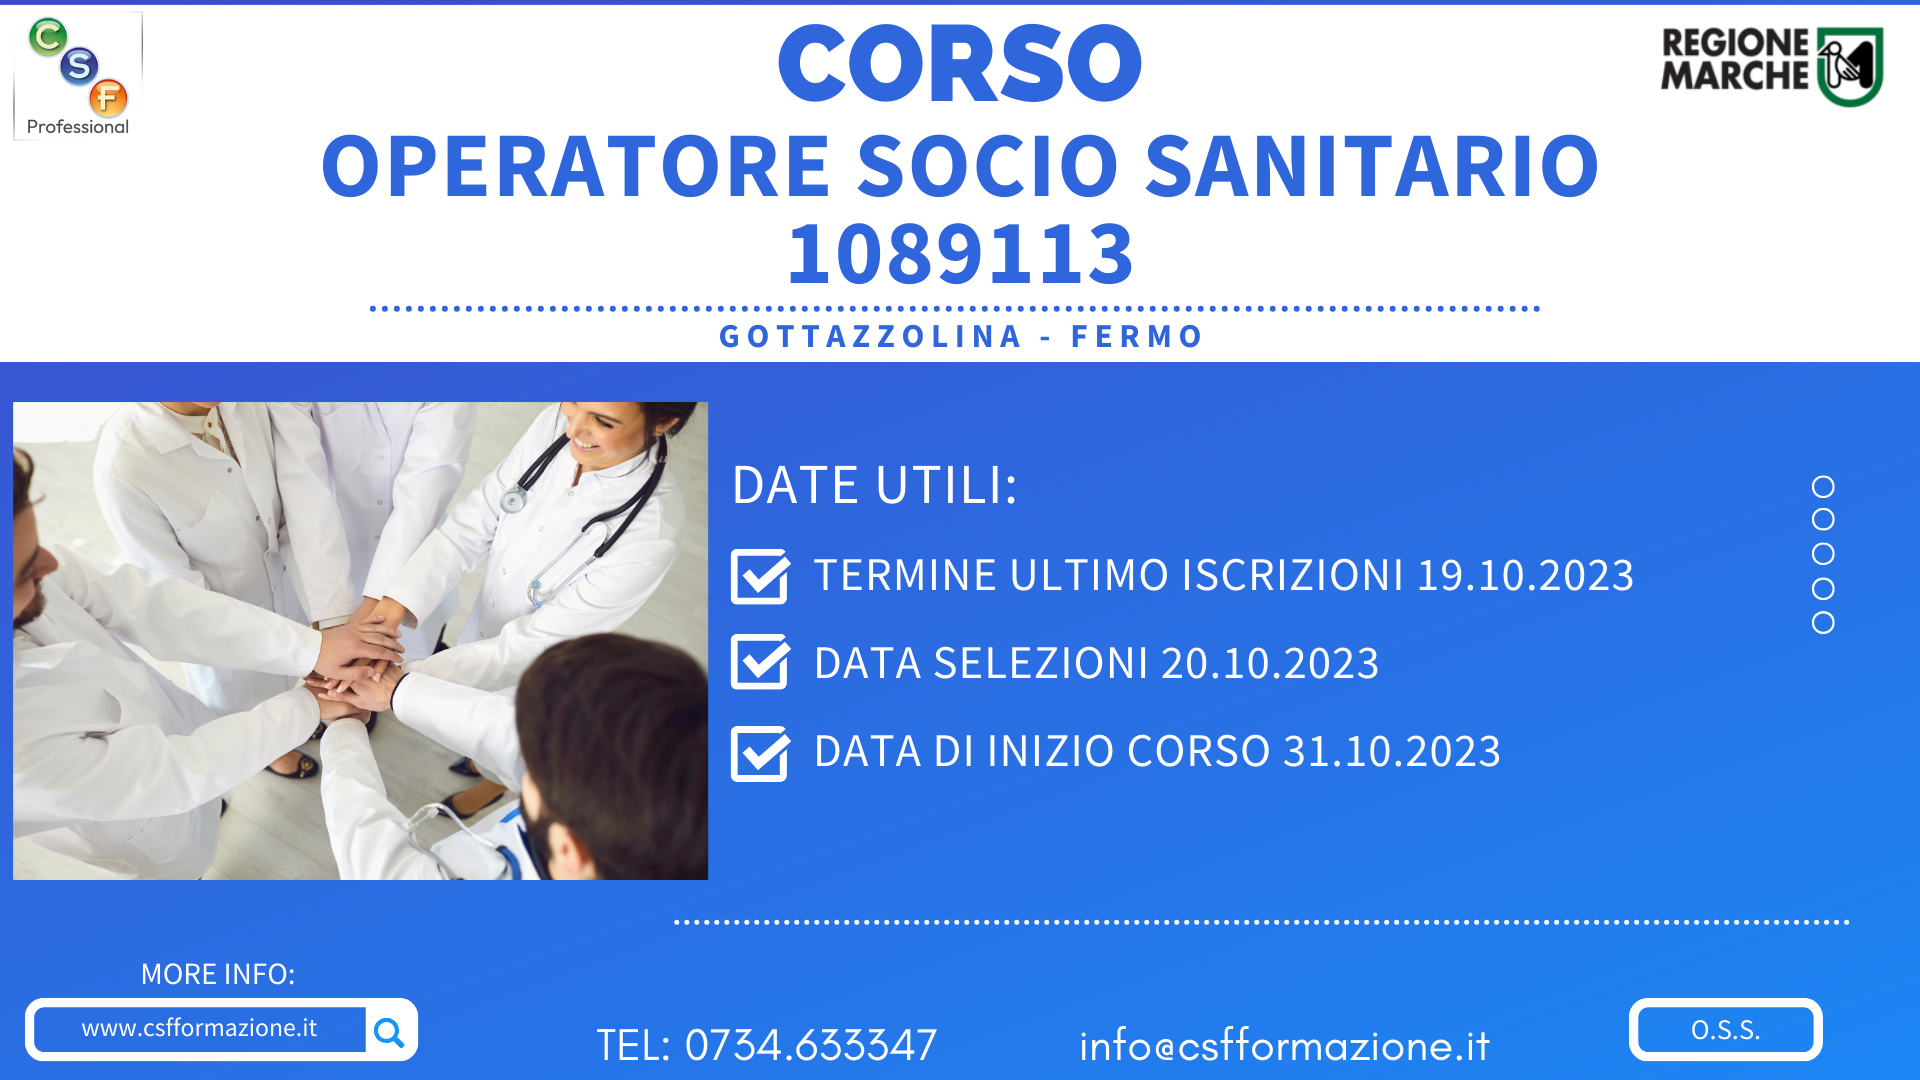 Corso OSS a Grottazzolina FM “Operatore Socio Sanitario”